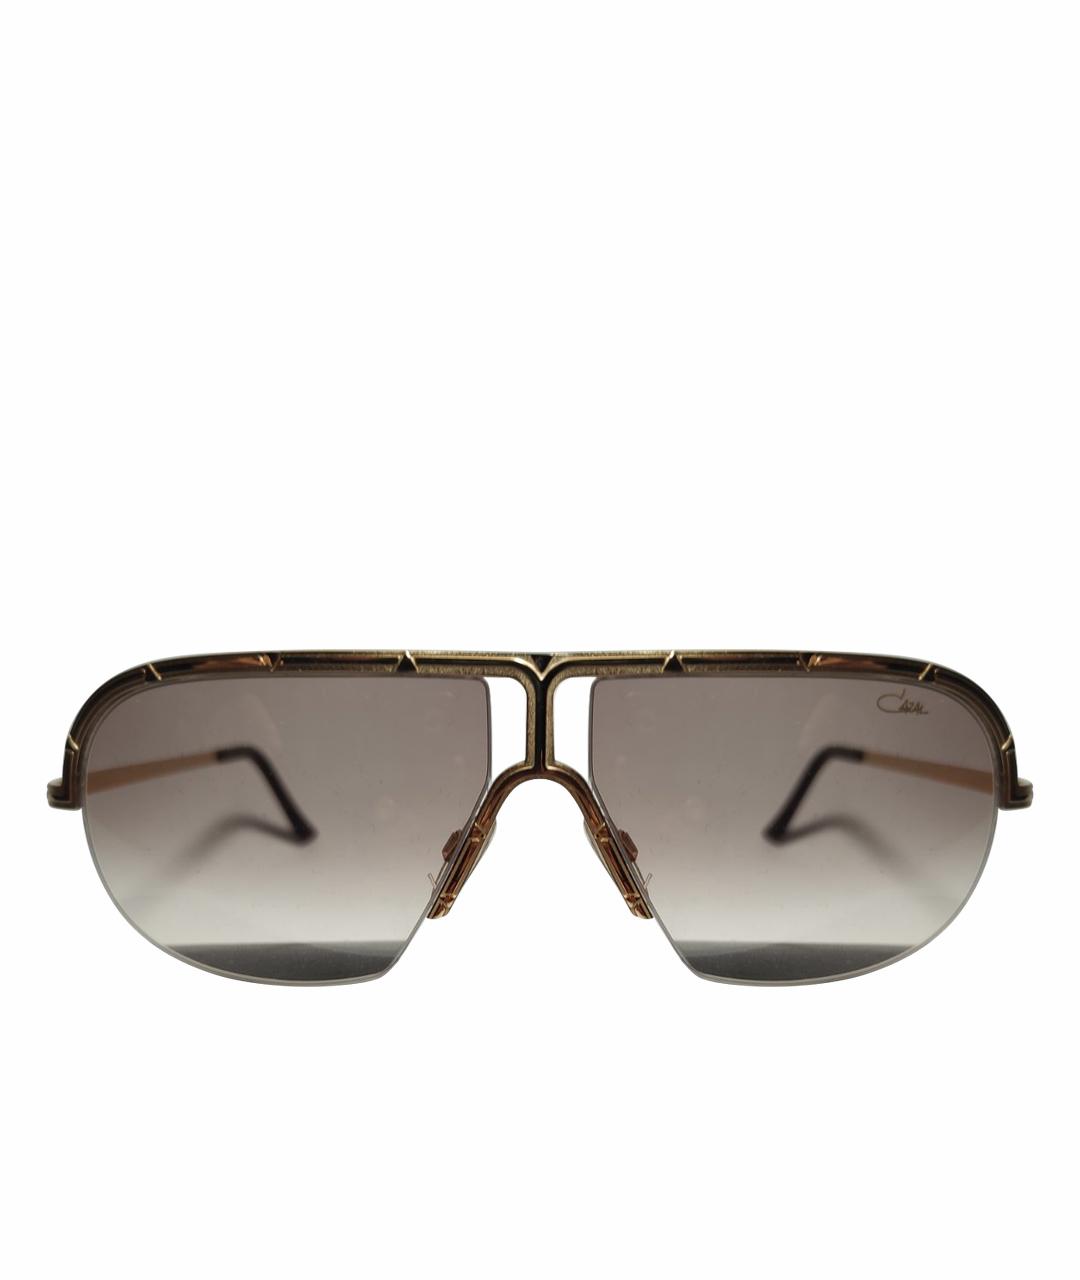 CAZAL Золотые металлические солнцезащитные очки, фото 1